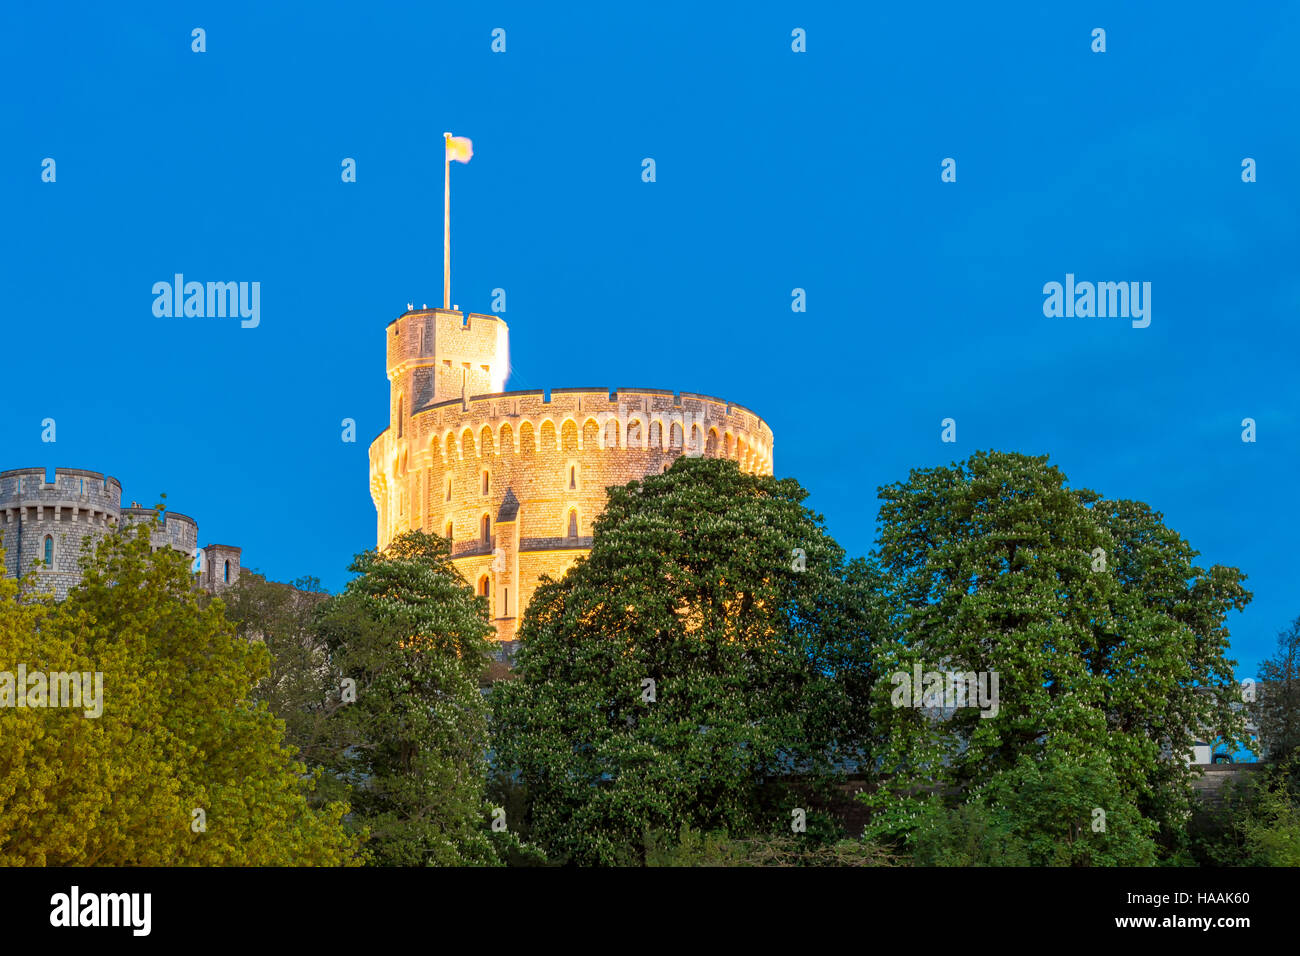 La tour ronde du château de Windsor. Windsor, Berkshire, England, UK Banque D'Images